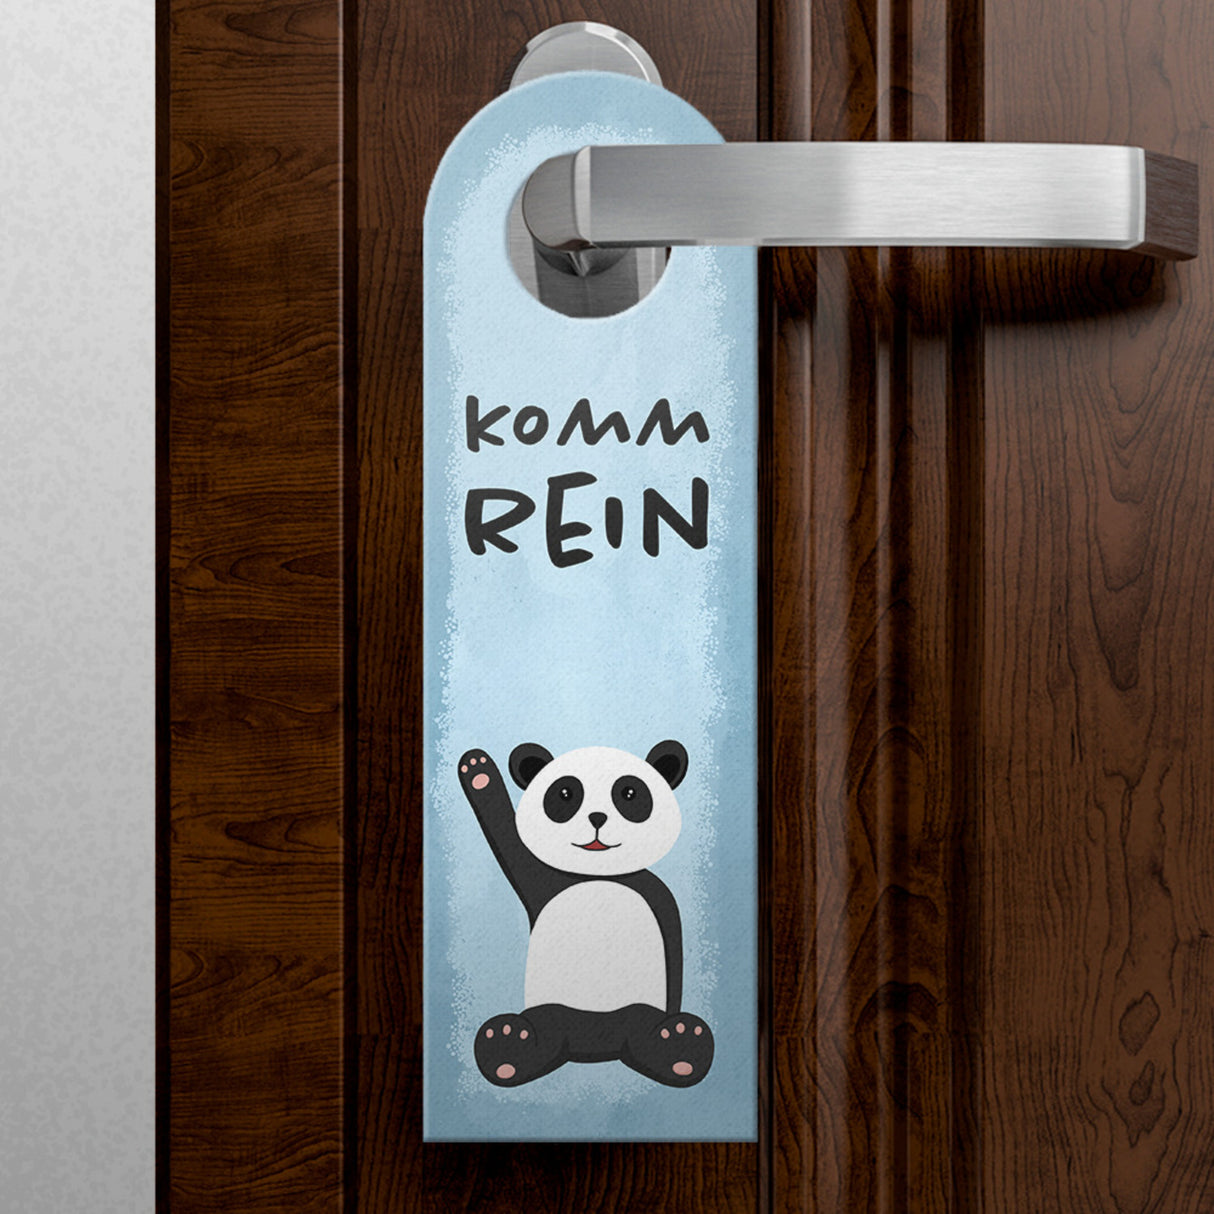 Bitte nicht stören Türhänger aus Filz mit niedlichem Panda